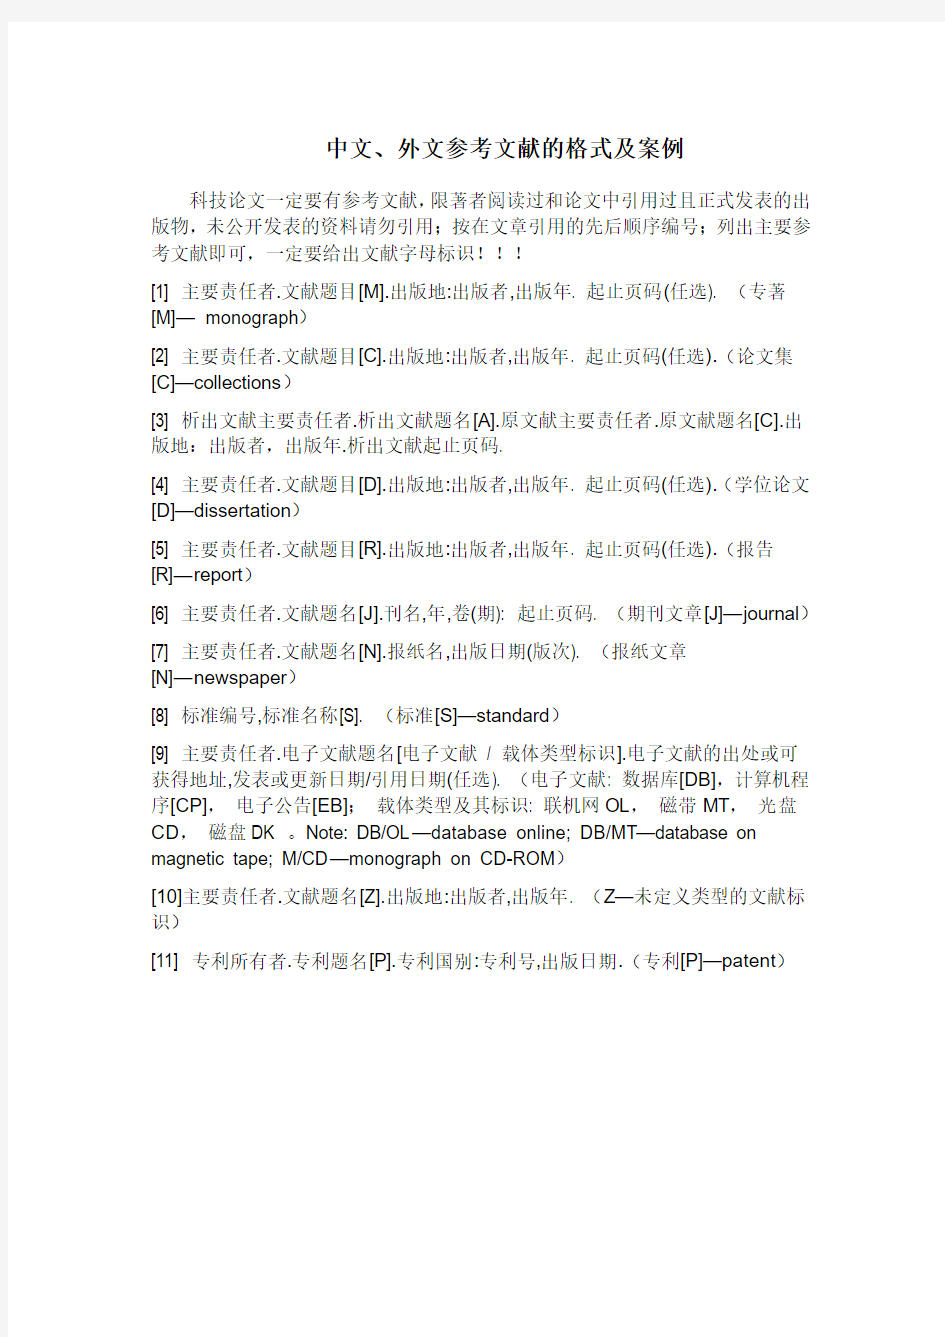 中文、外文参考文献的格式及案例